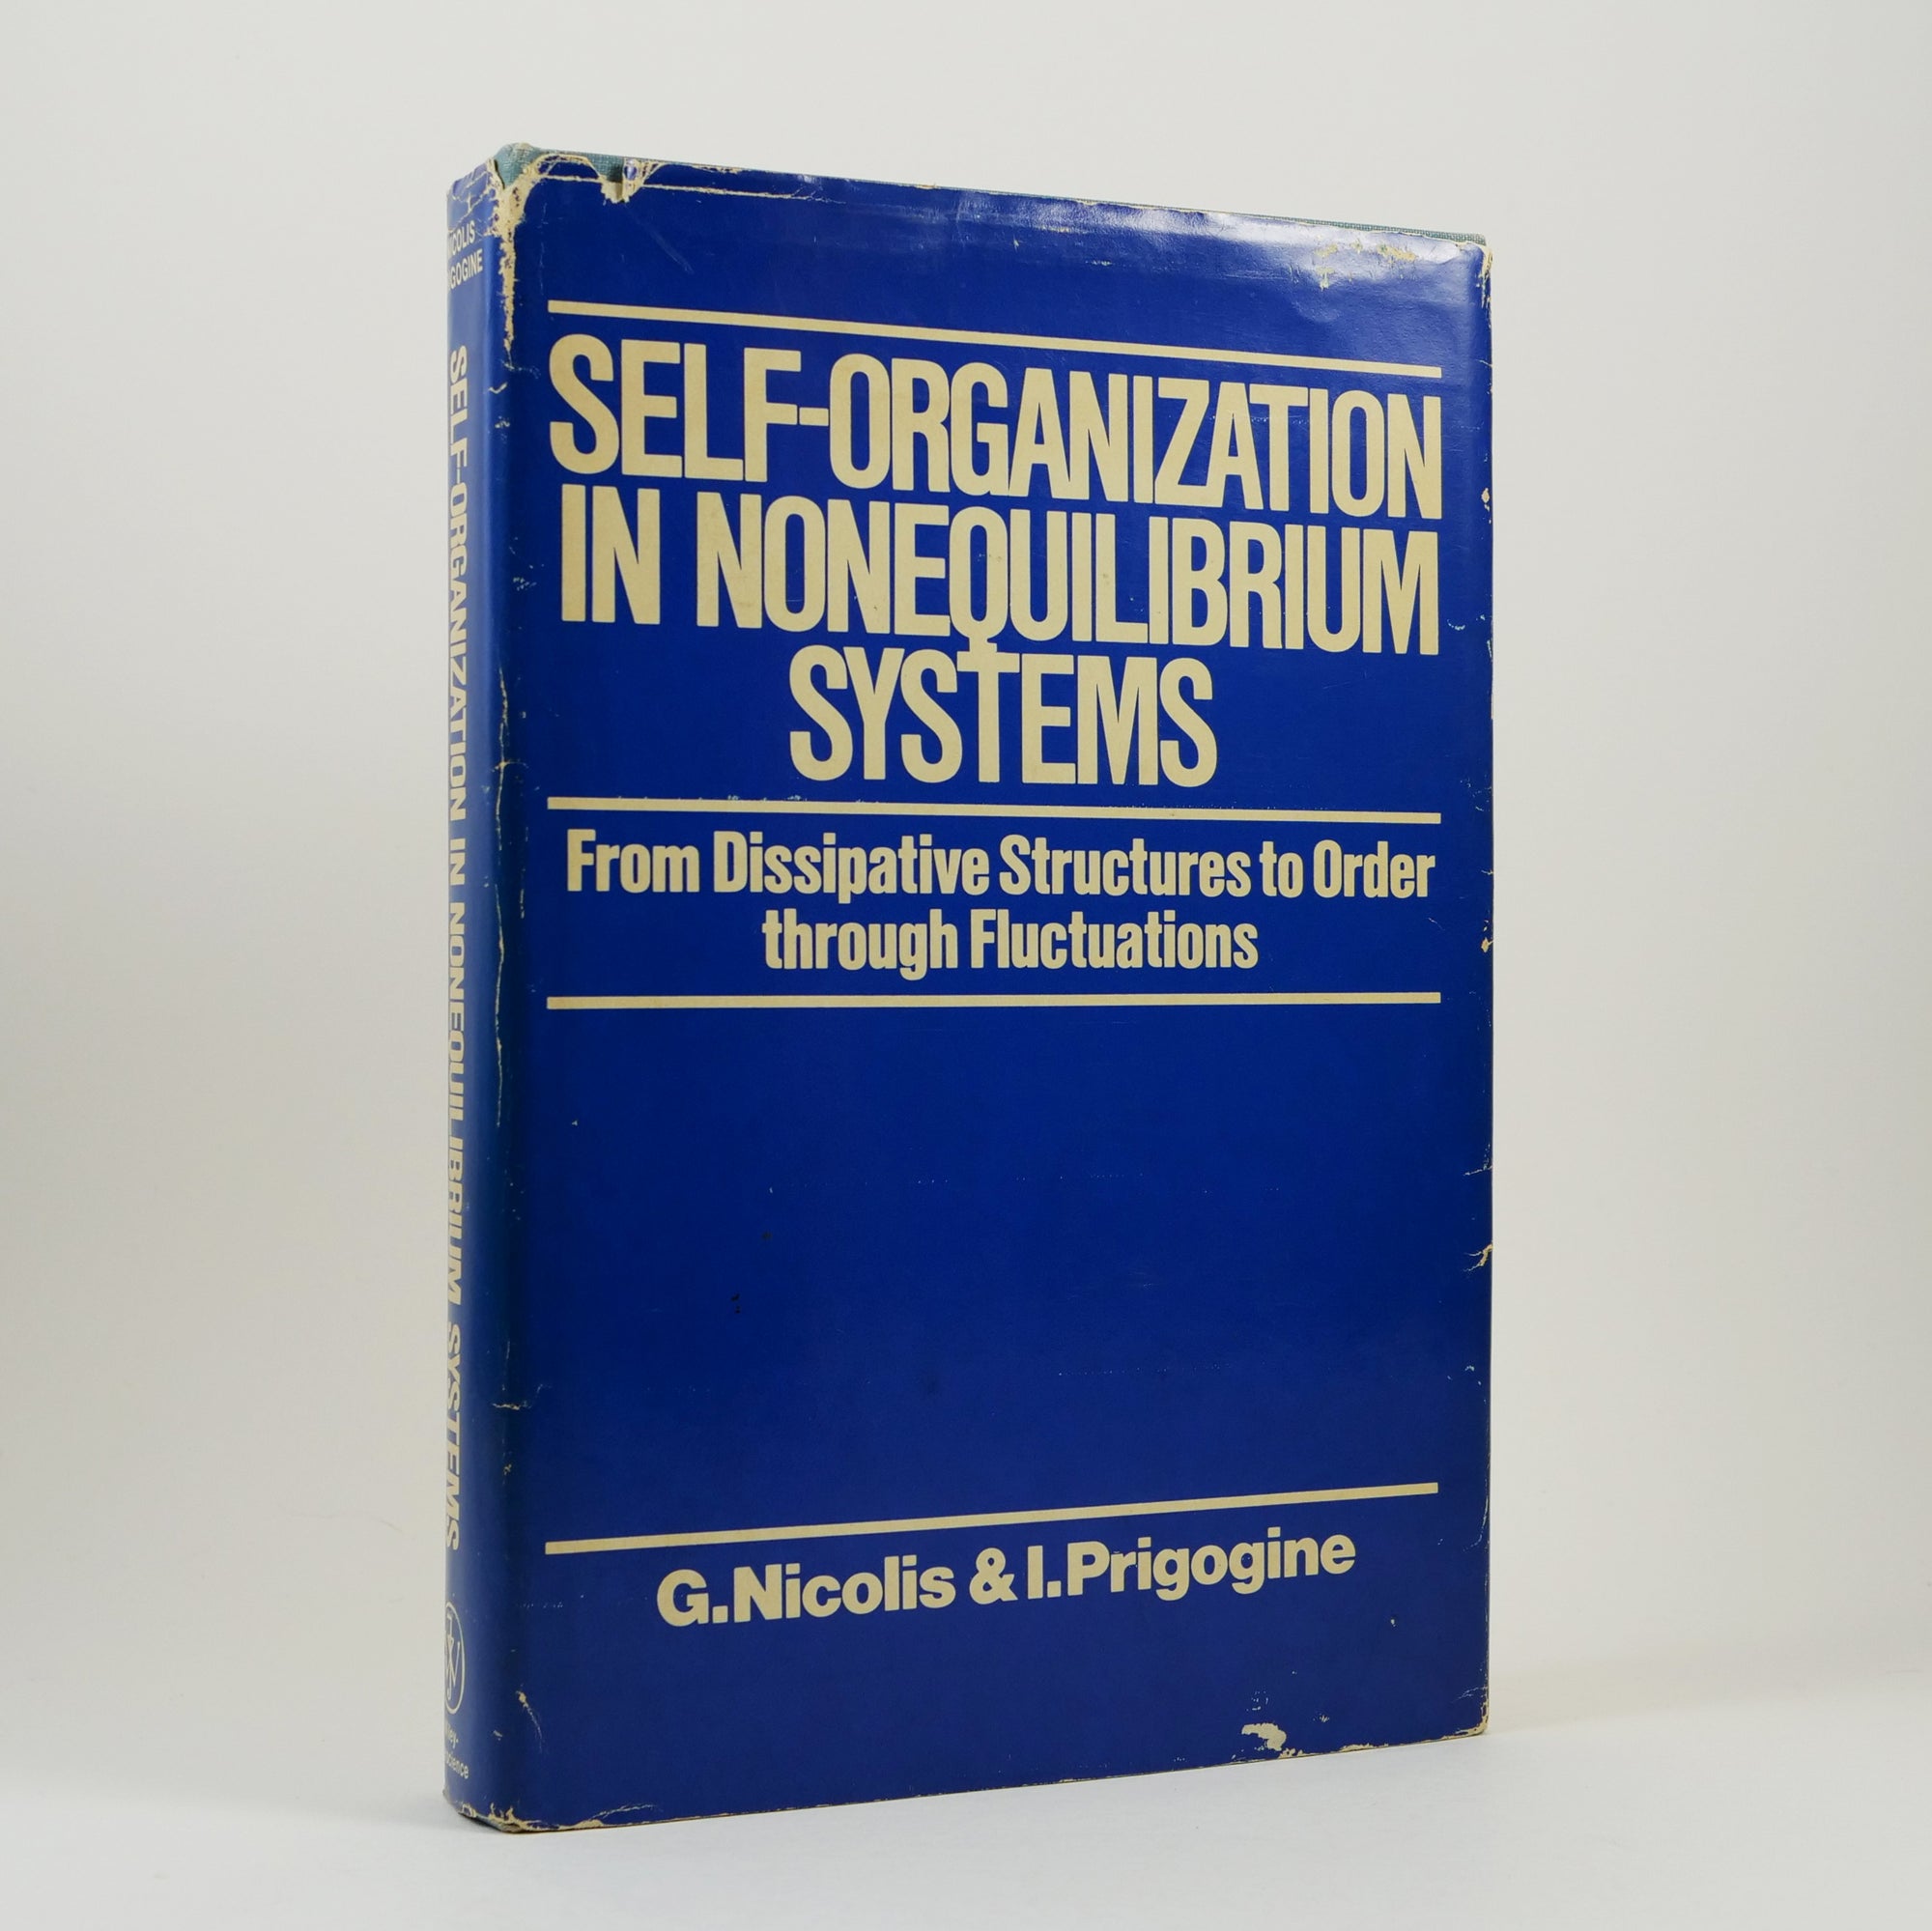 G. Nicolis & I. Prigogine | Self-Organization in Nonequilibrium Systems